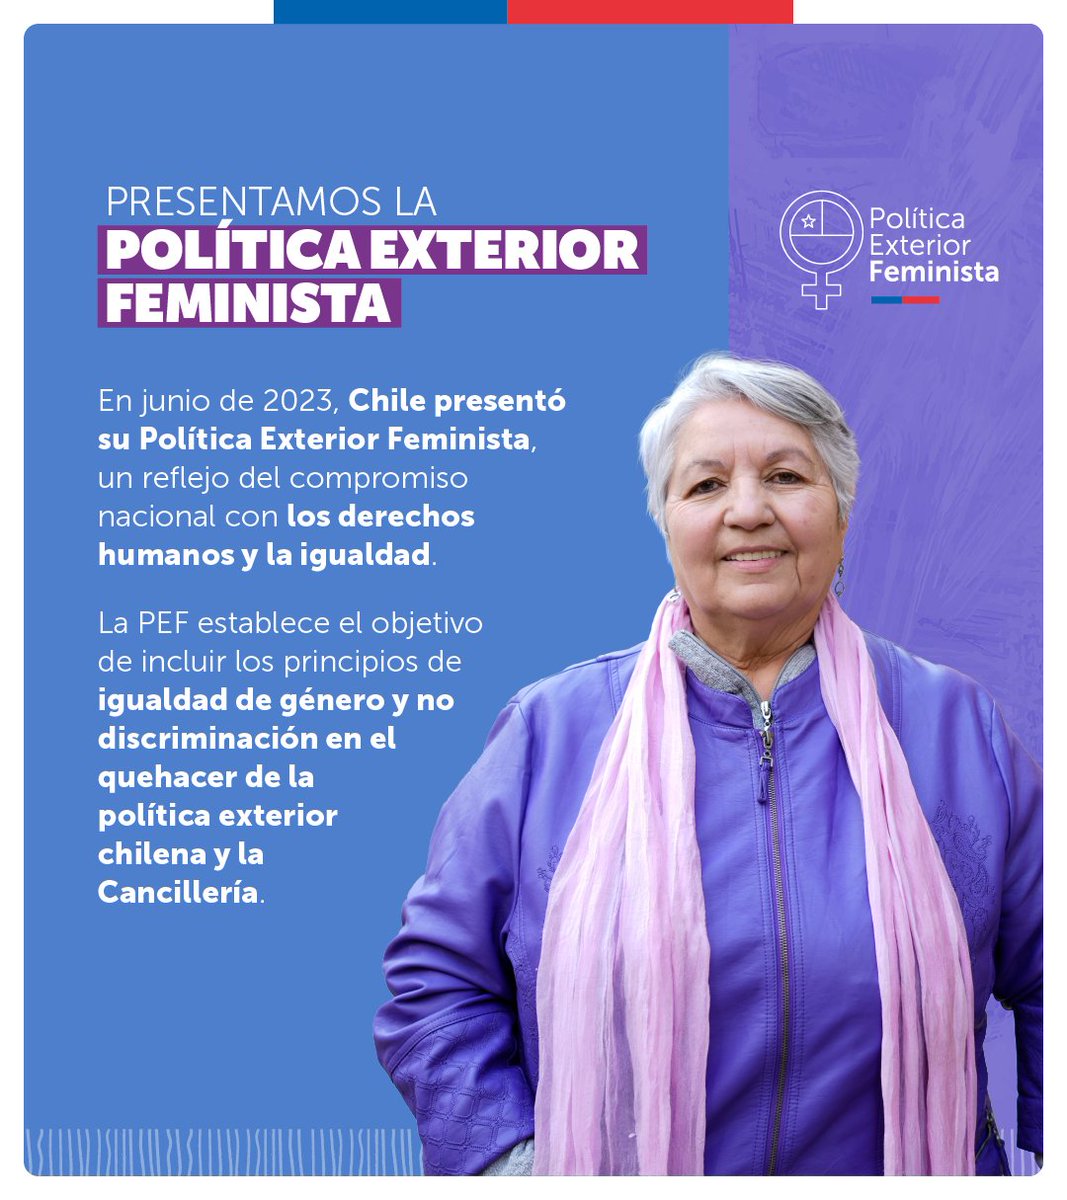 En el #DíaInternacionaldelaMujer queremos destacar que Chile y México compartimos una #PoliticaExteriorFeminista la que nos convoca a reflexionar como en los próximos 364 días ponemos de verdad en acción la igualdad de género. #8M #ChileParaTodas